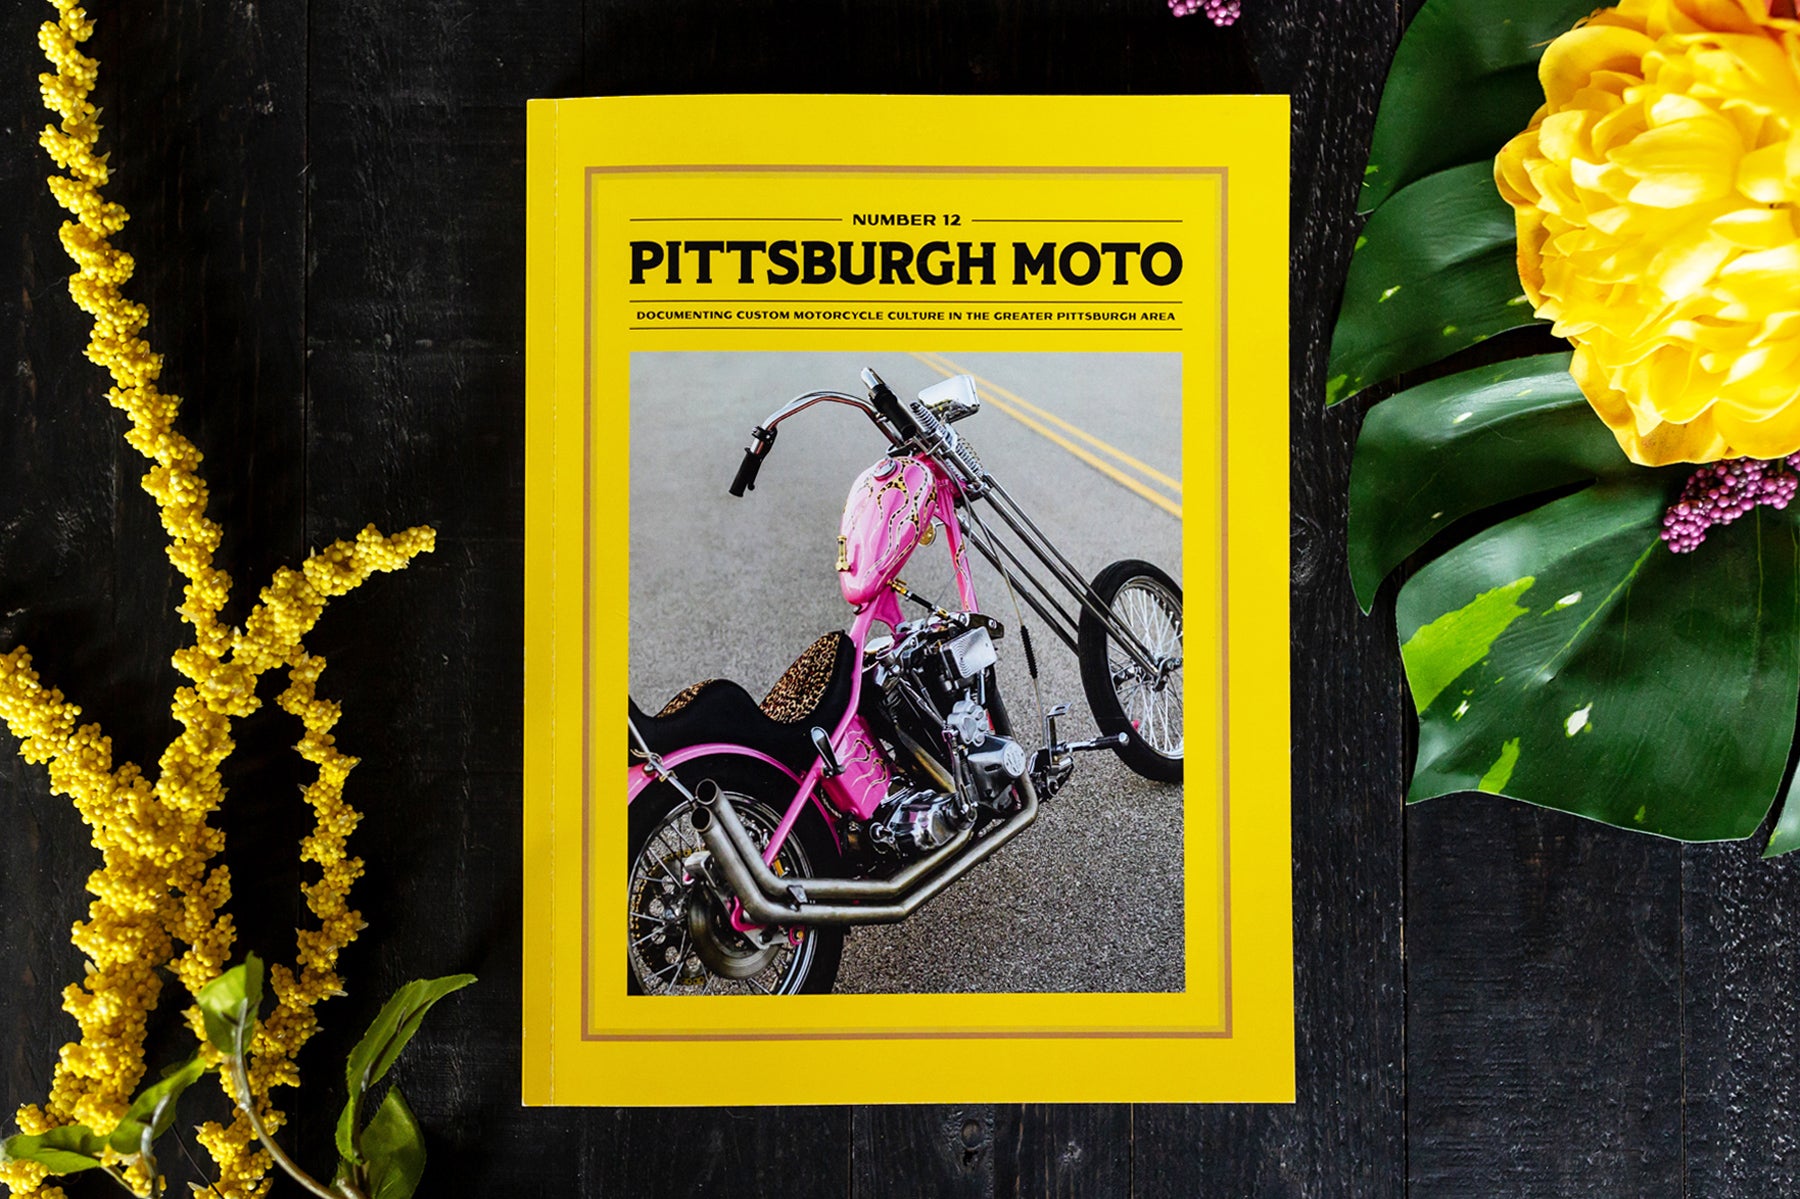 Pittsburgh Moto magazine issue 12 Kurt Diserio editor designer